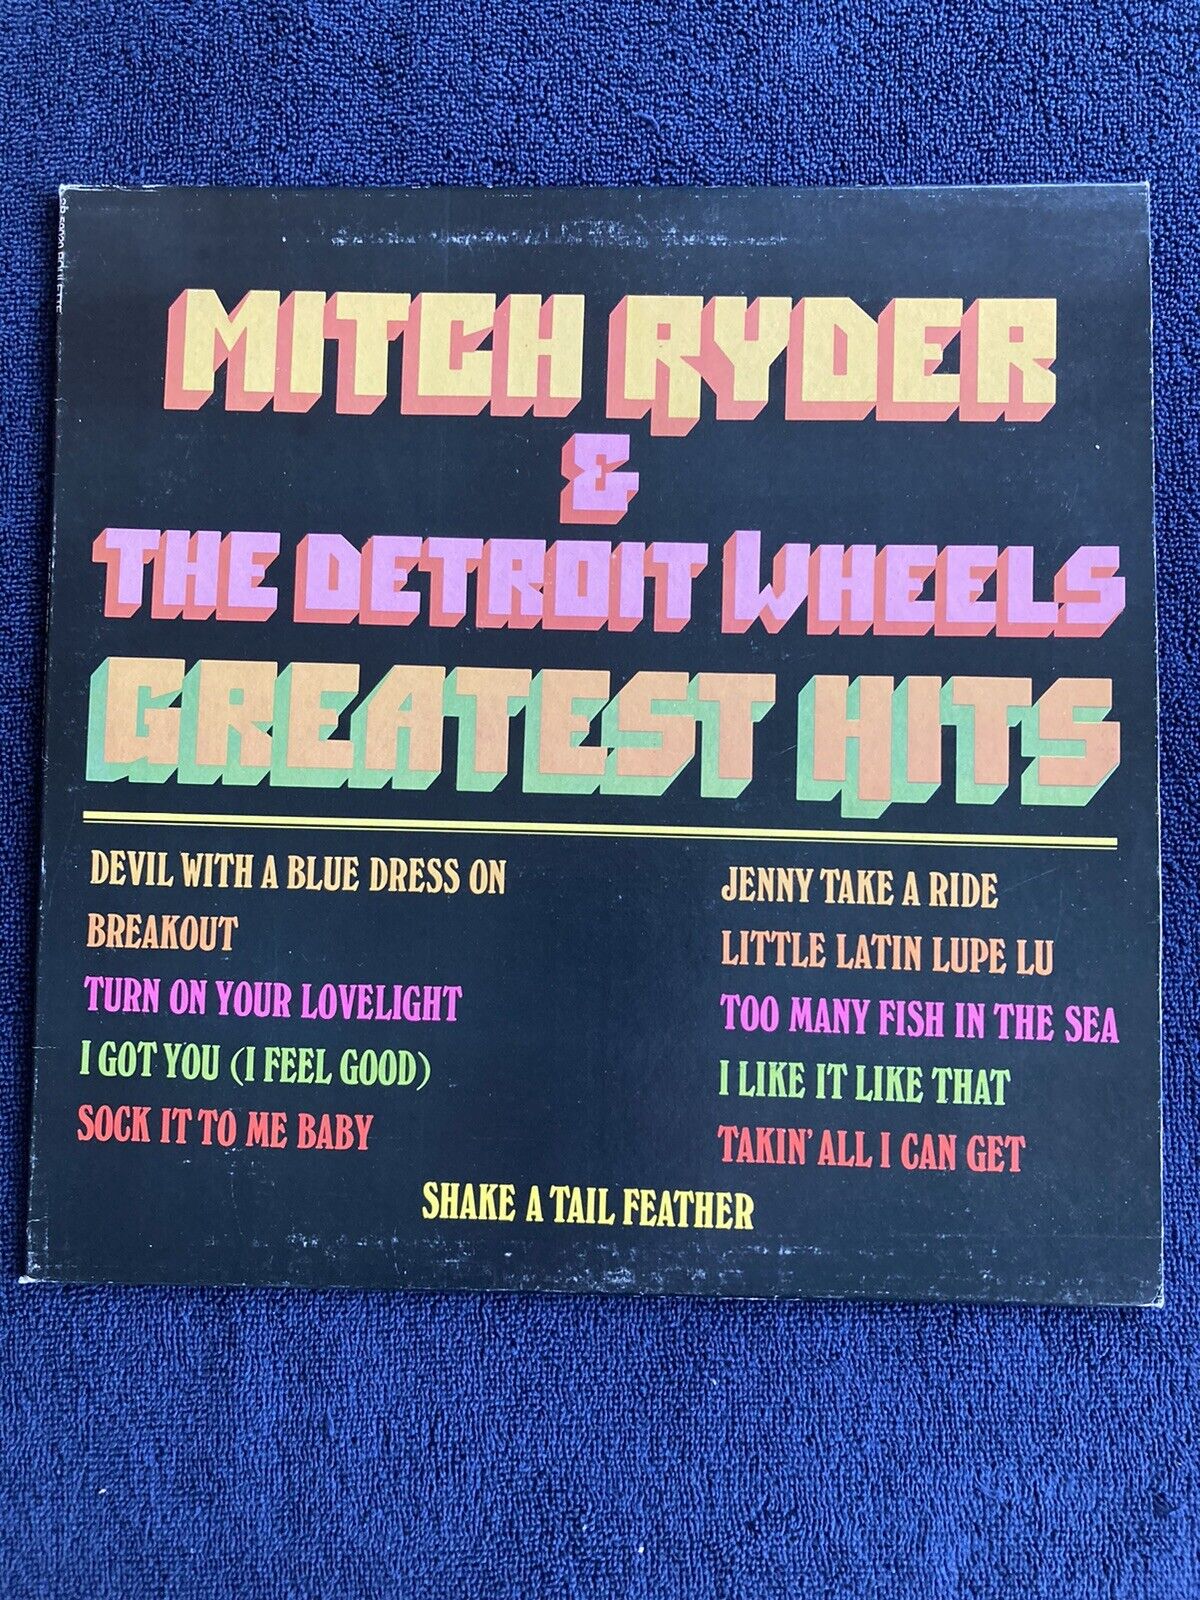 MITCH RYDER & THE DETROIT WHEELS~ Greatest Hits. 1981 Vinyl LP. NEAR MINT COPY